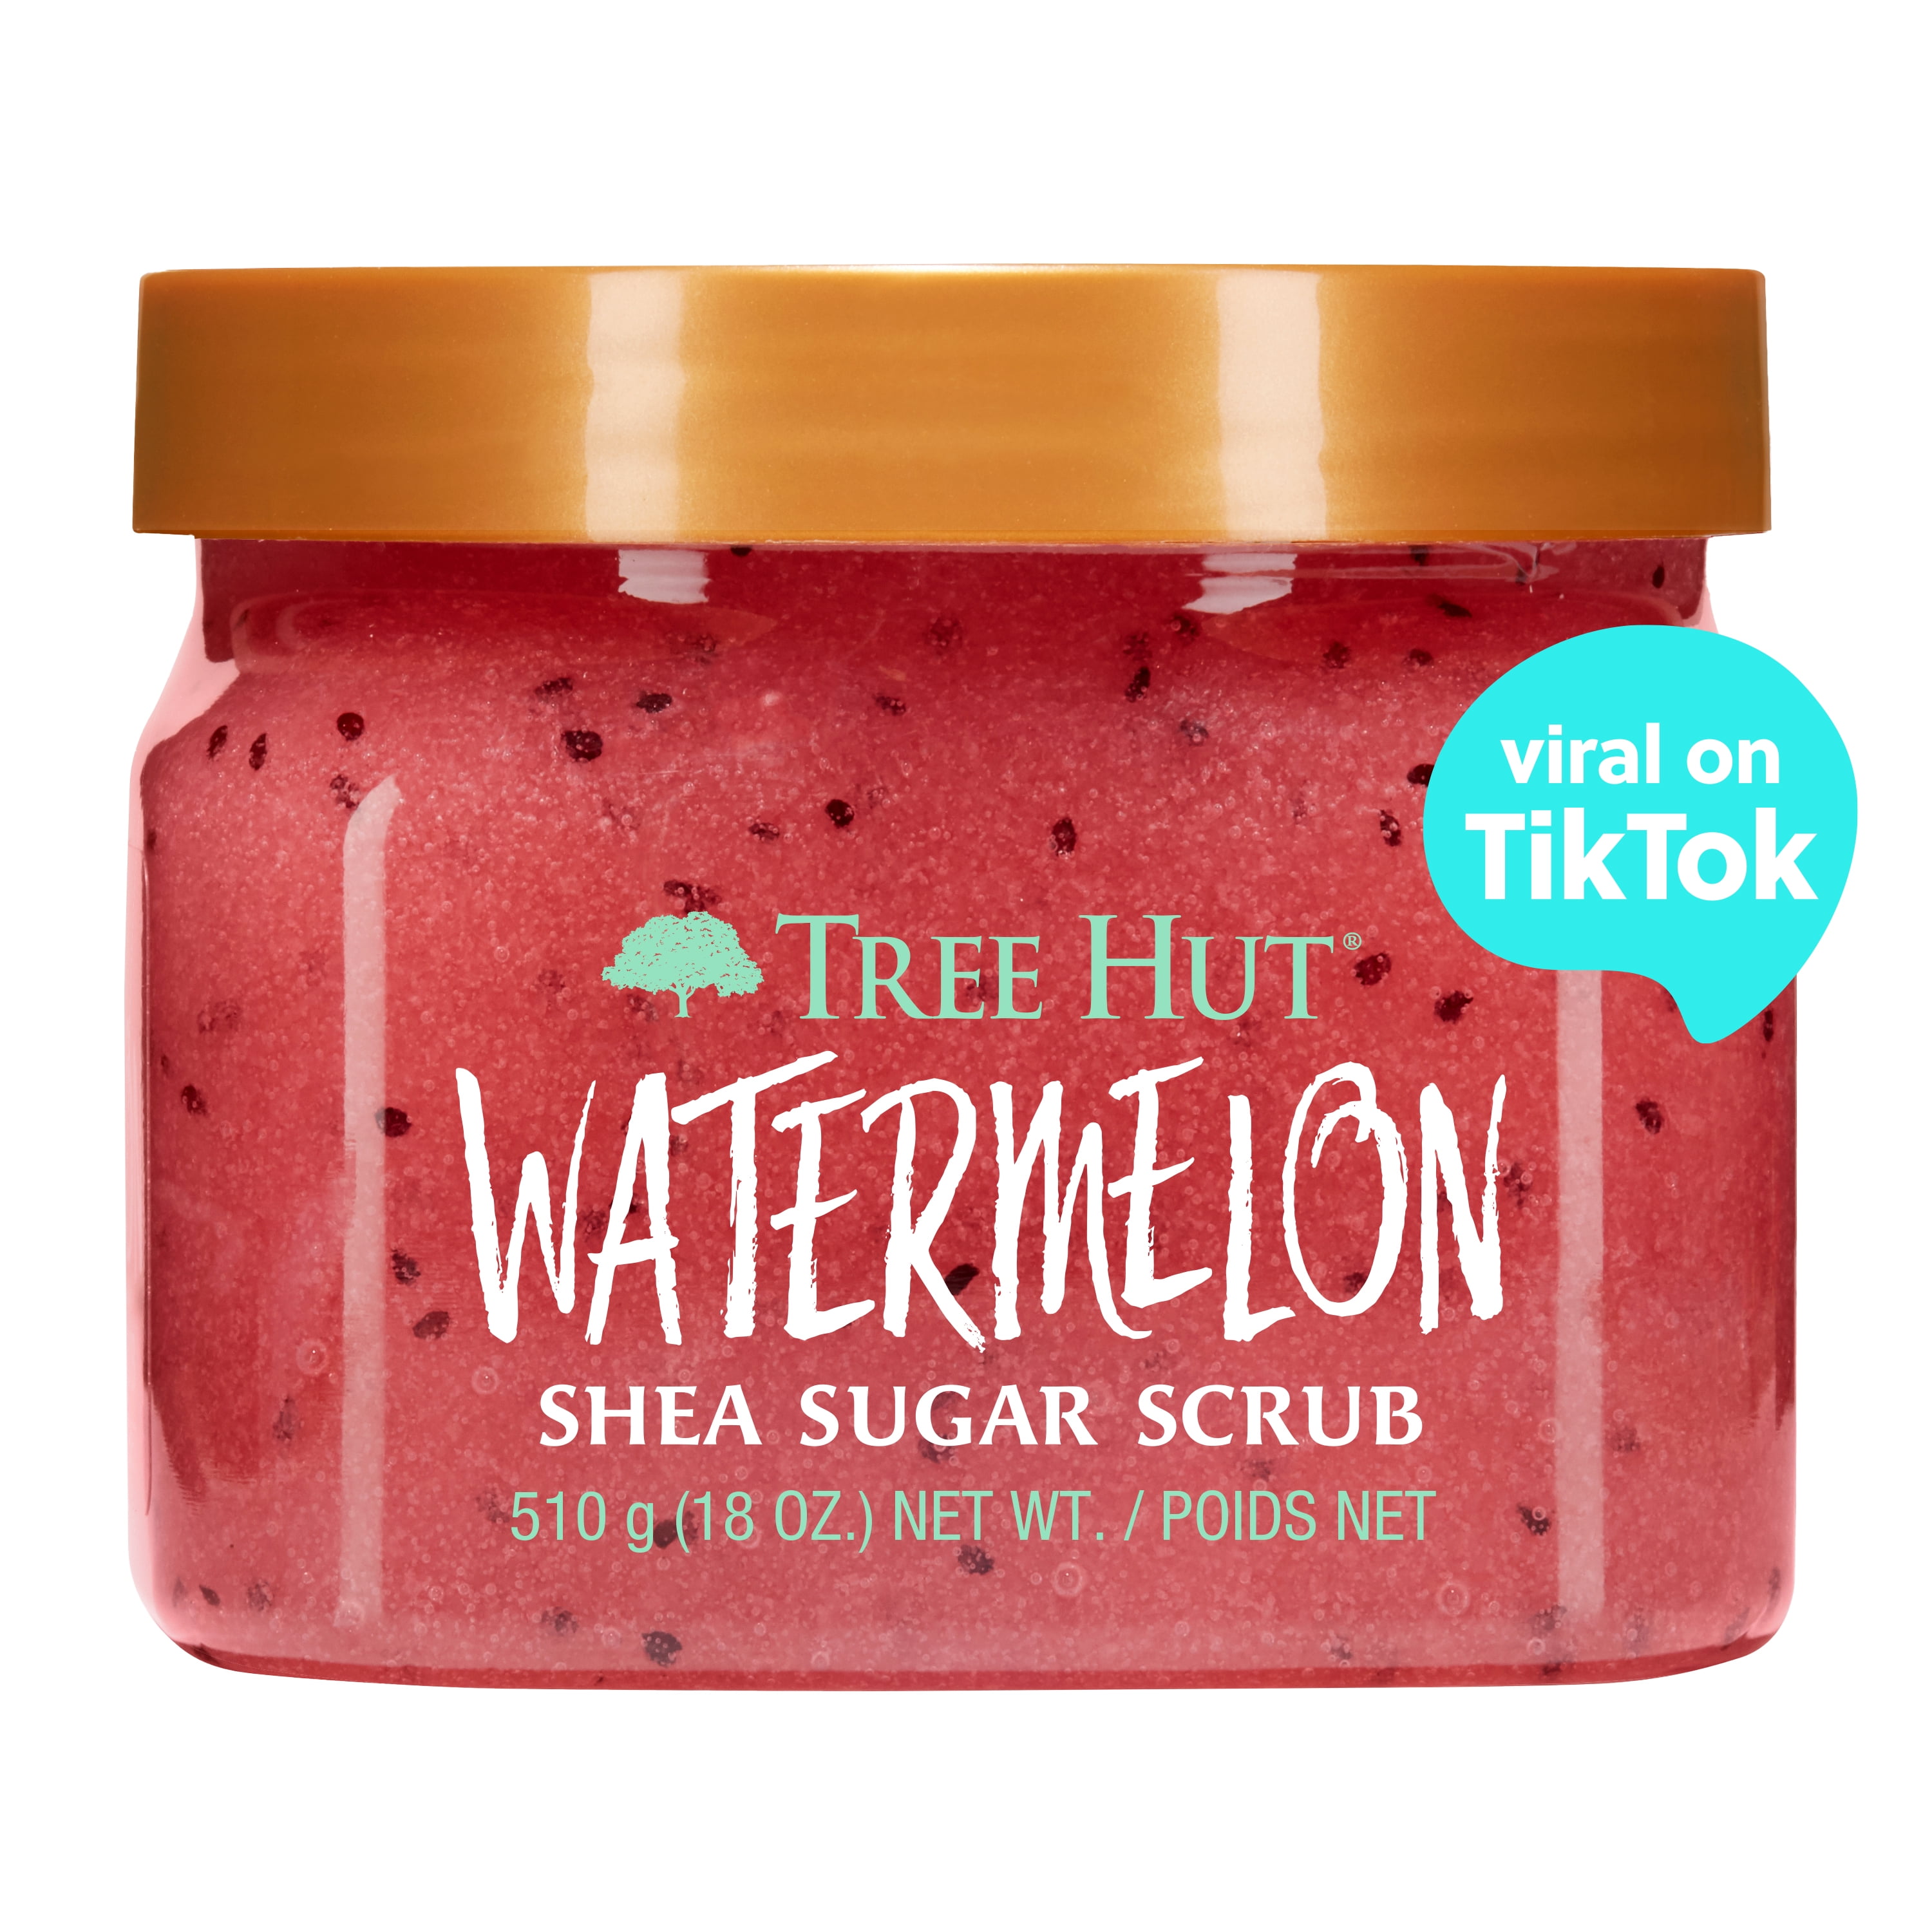 Tree Hut Watermelon Shea Sugar Exfoliating and Hydrating Body Scrub, 18 oz.  